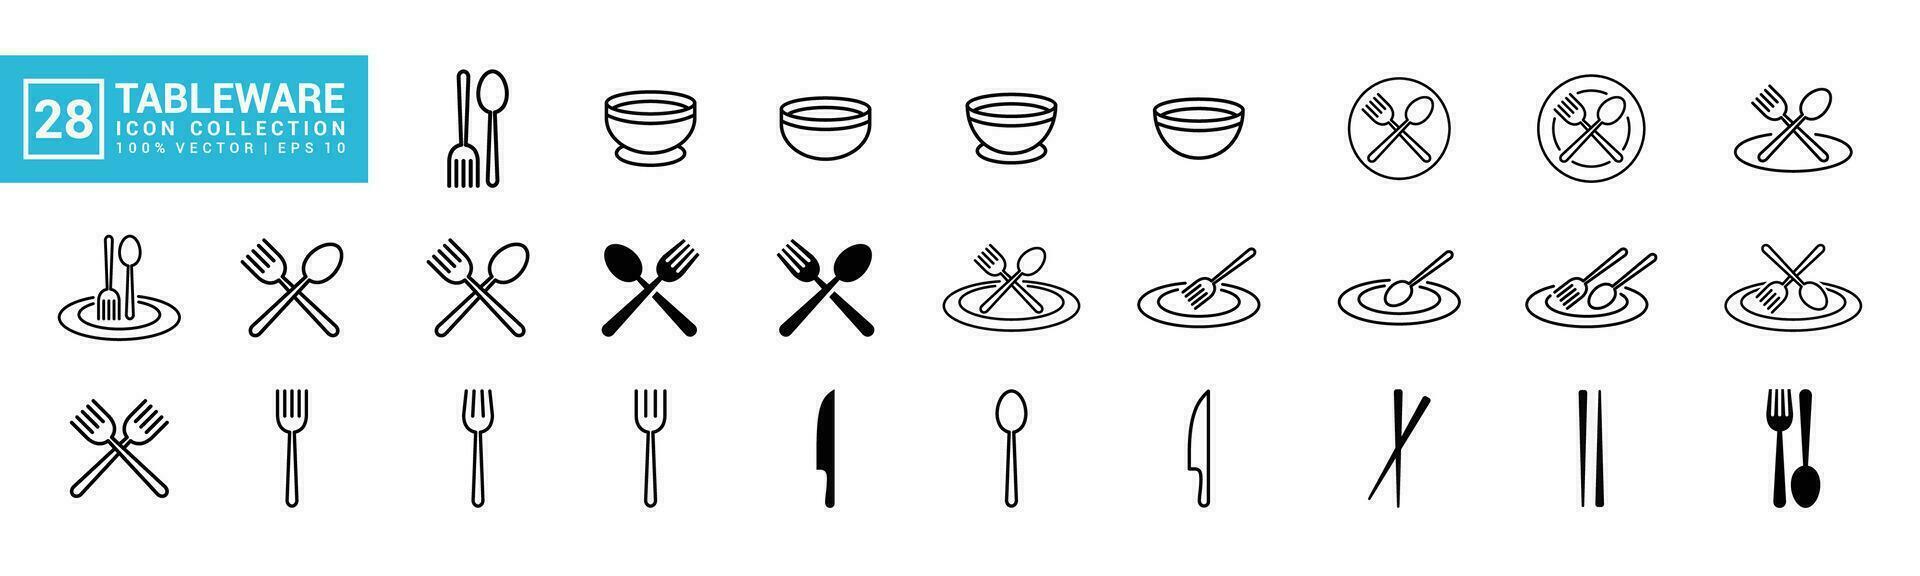 colección de vajilla iconos, cocina, cocinar, cocinero, editable y redimensionable eps 10 vector